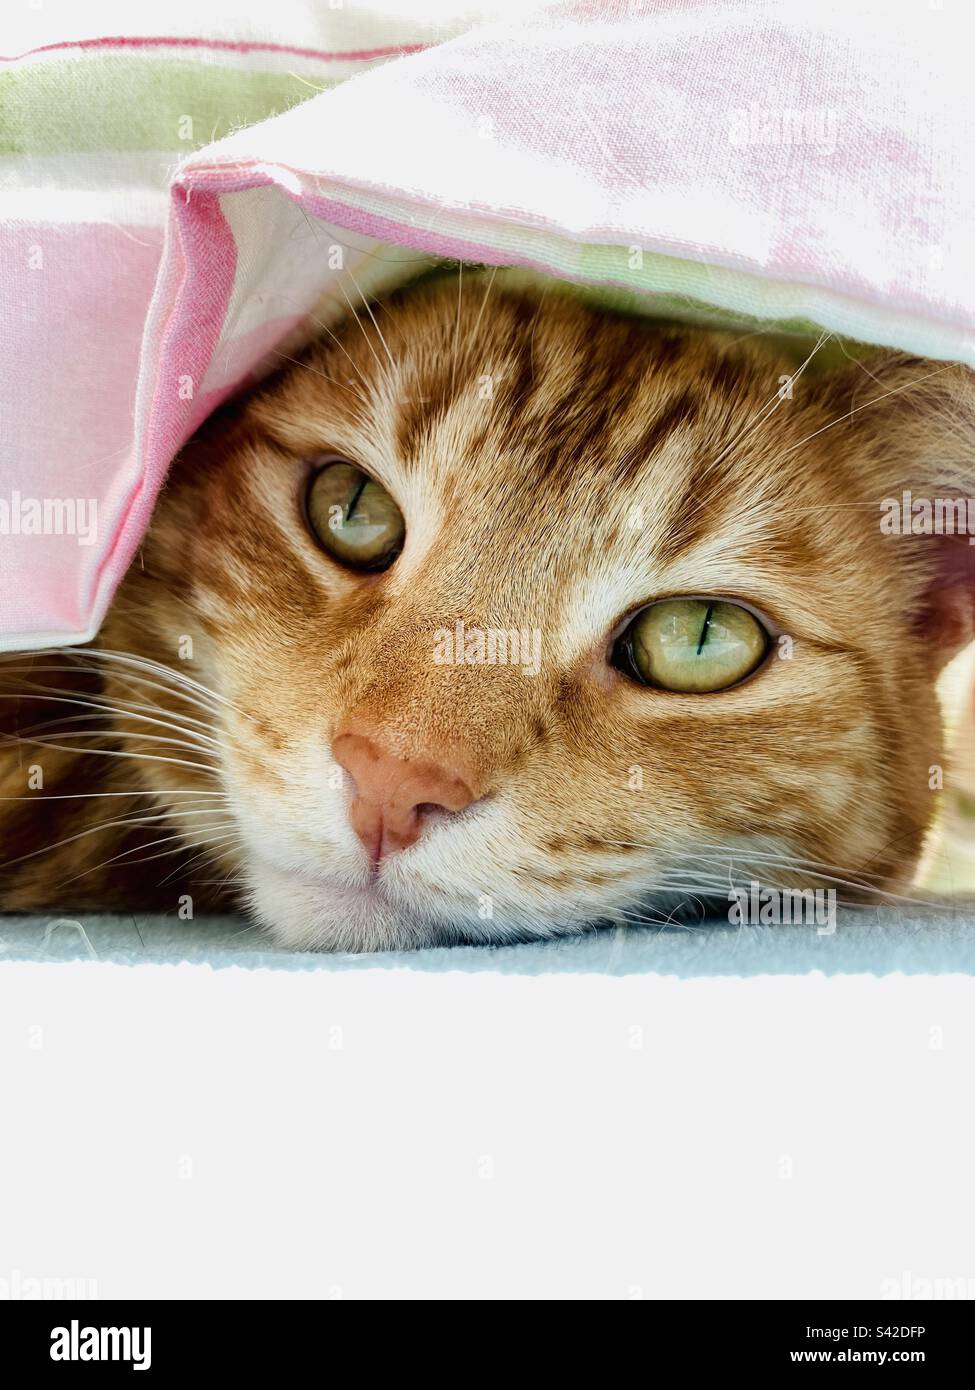 Ginger tabby cat having a duvet day Stock Photo